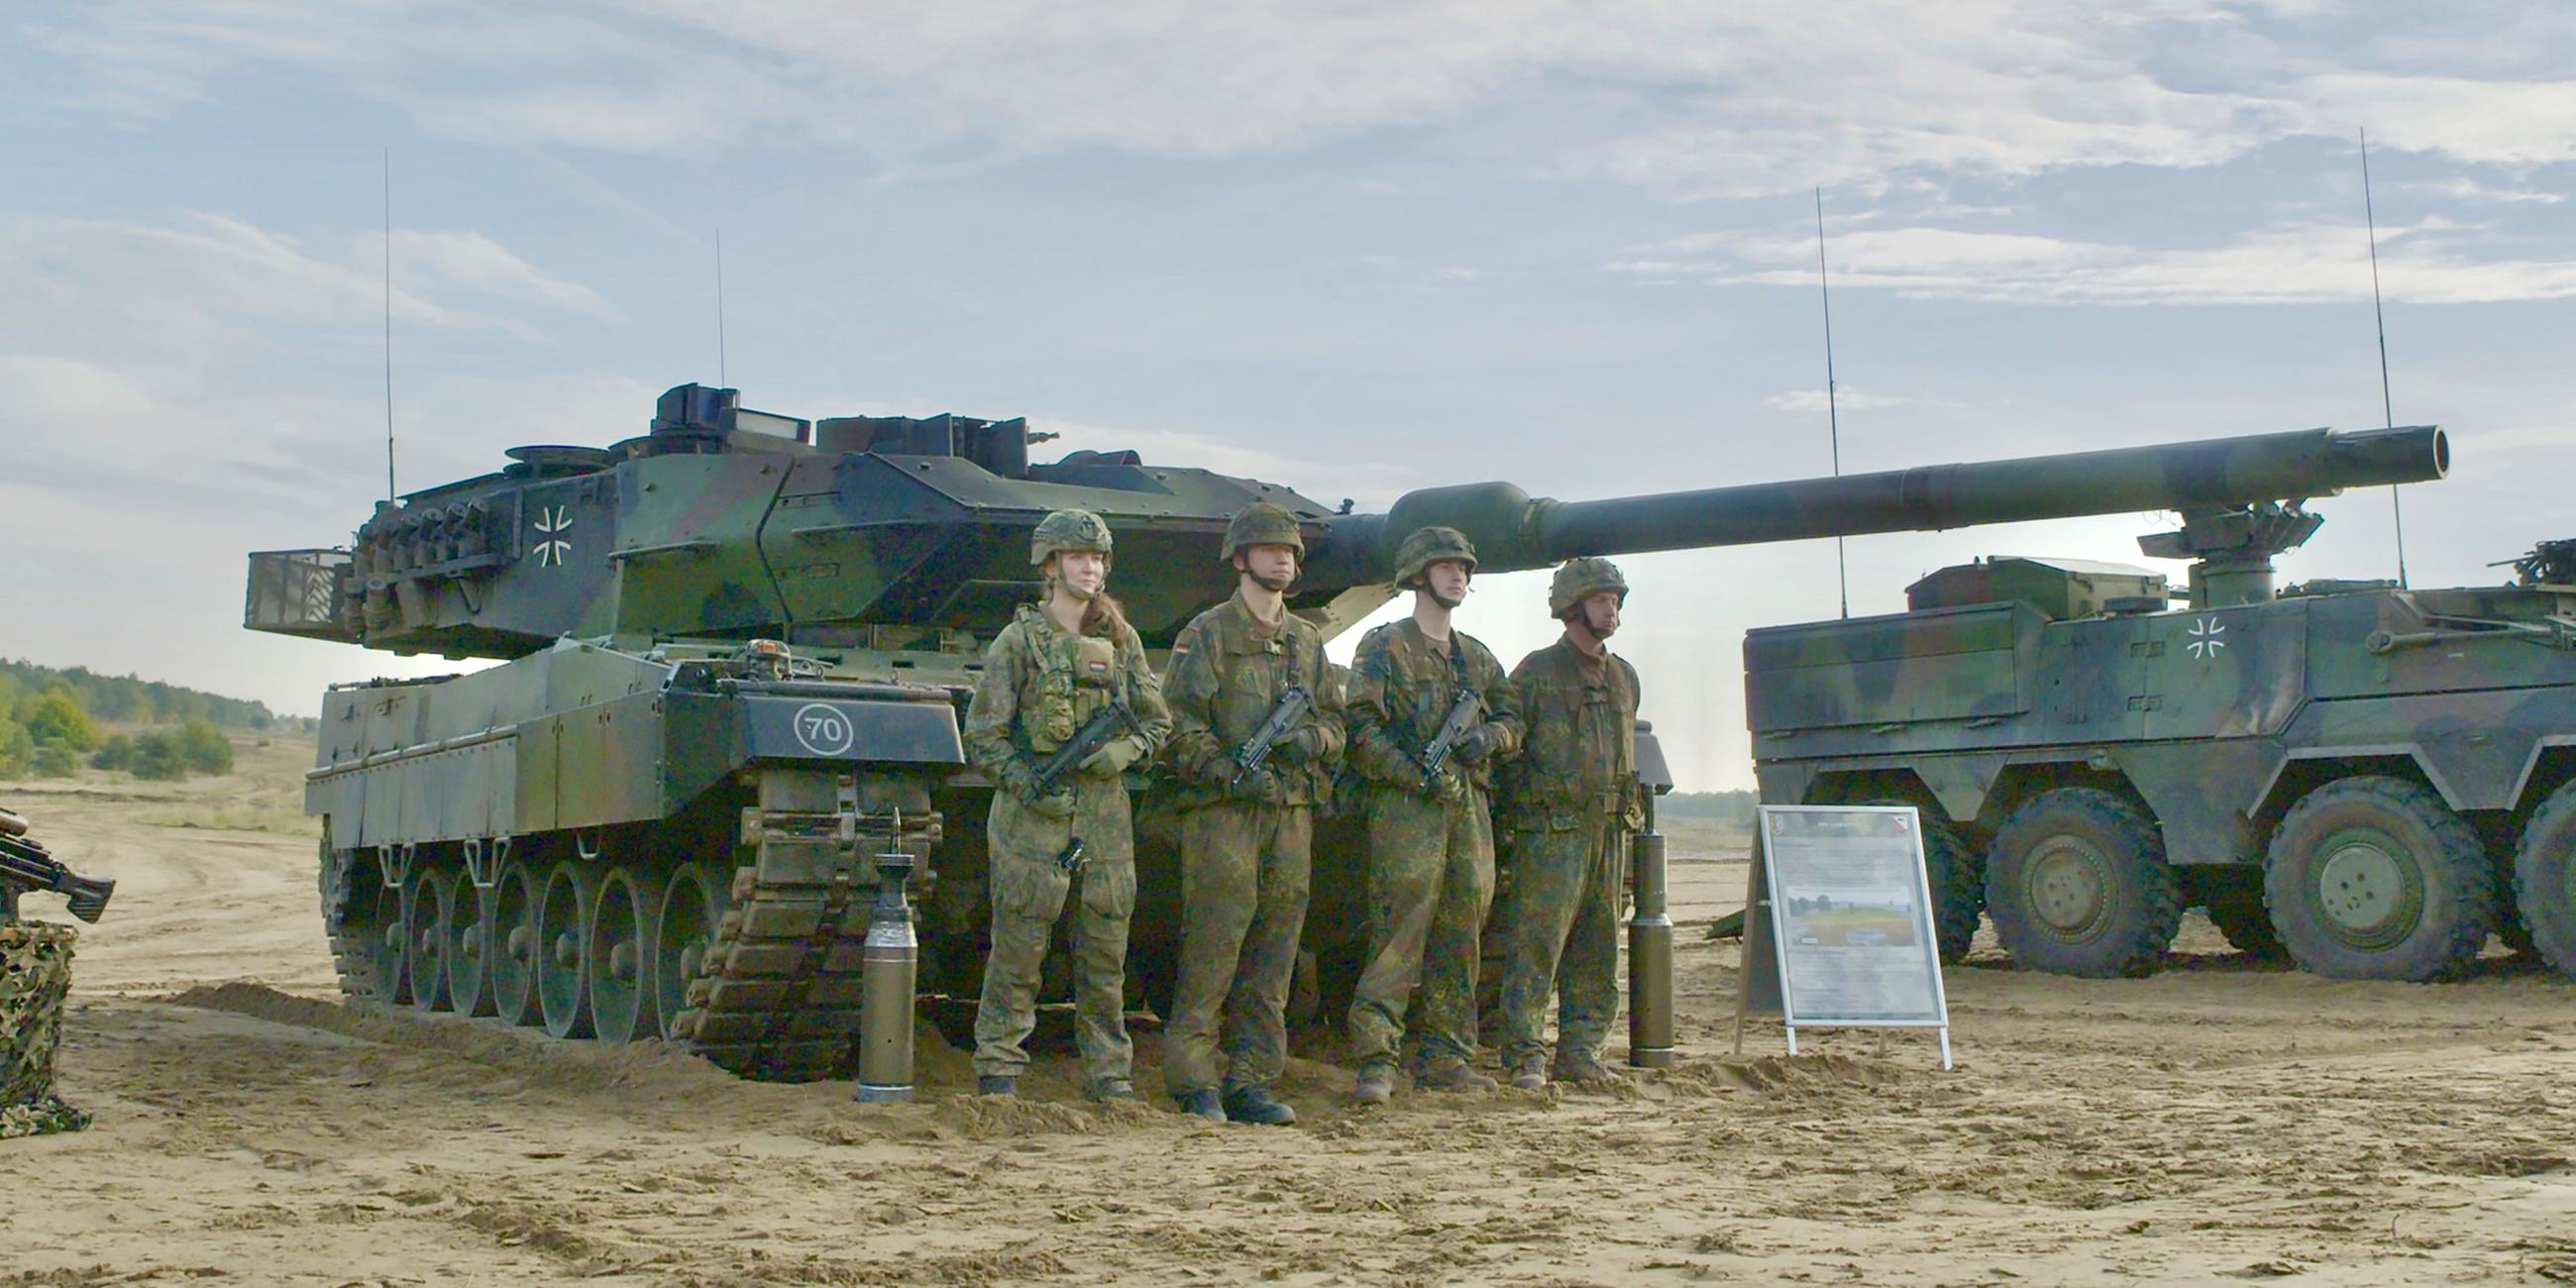 Vier Soldaten der Bundeswehr stehen in Tarnuniform vor einem Leopard 2 Panzer. Daneben steht ein weiterer Panzer.